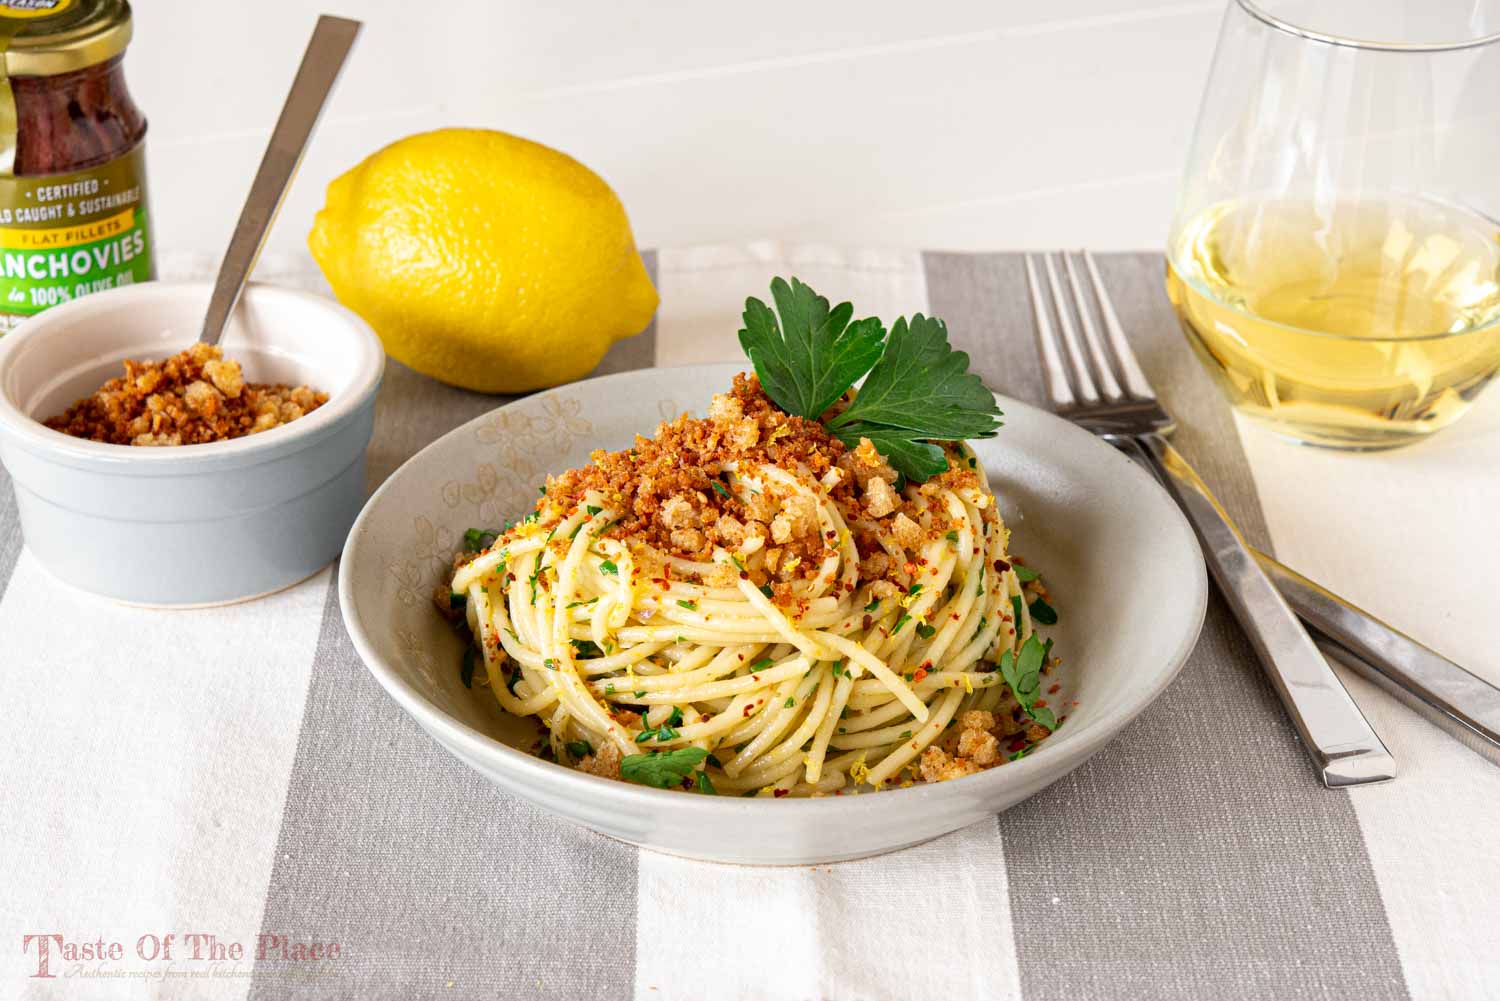 Sicilian-Style Spaghetti with Anchovies and Breadcrumbs (Spaghetti con Acciughe e Mollica)